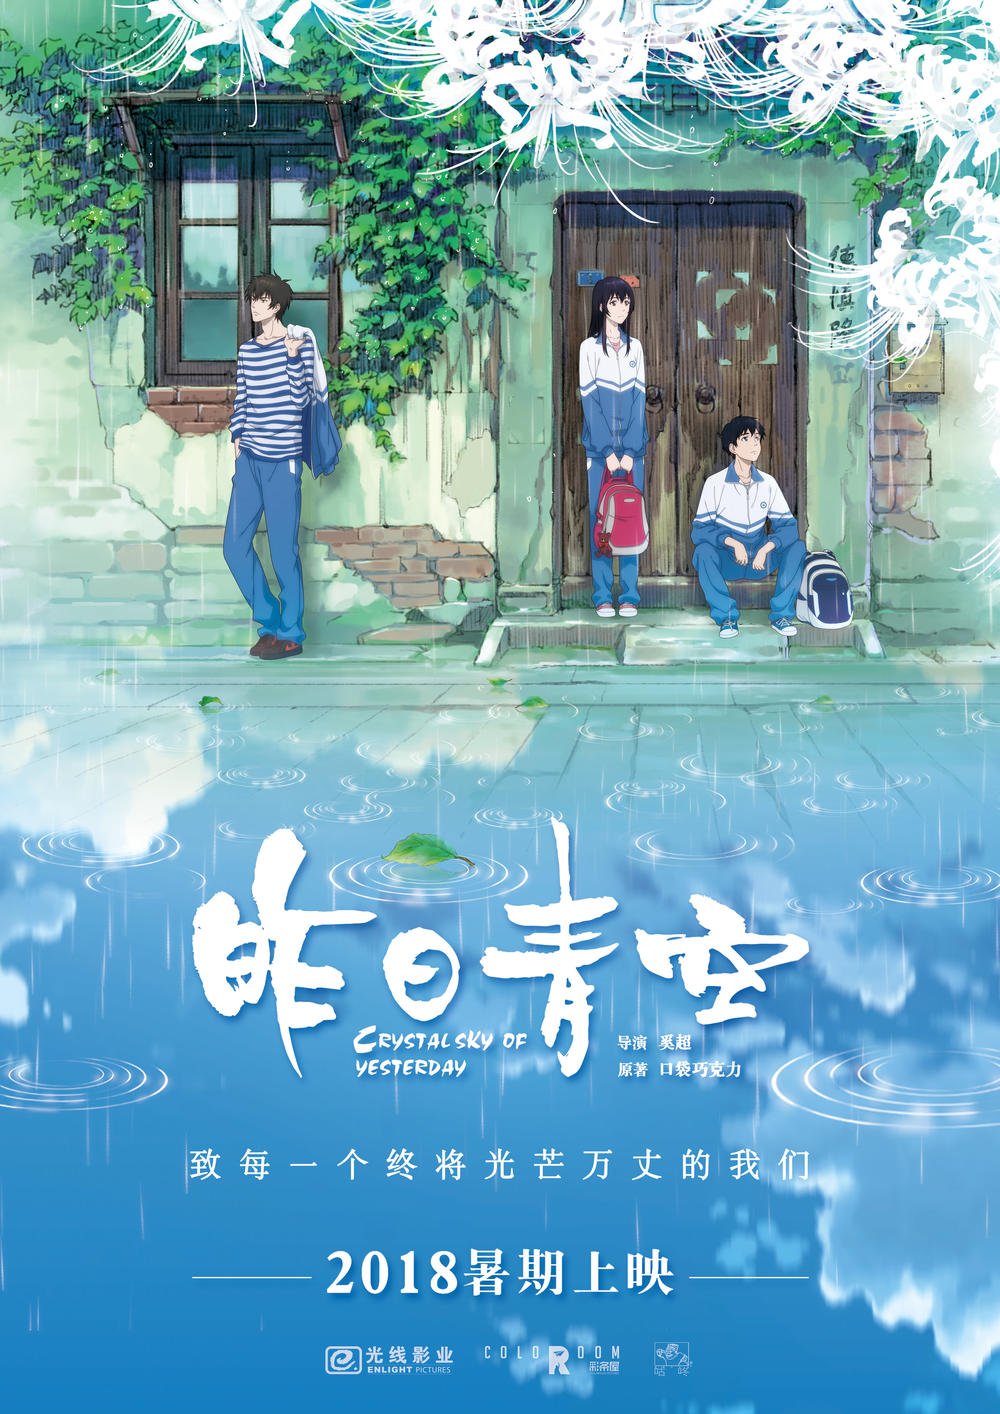 ネジムラ Fusumabeya 多分18年公開予定の中国アニメ映画 昨日青空 ですかね 16 17 18の青春アニメ映画の並びといった感じでしょうか 中国ではアニメに限らず青春恋愛物映画は人気も高いので そこを狙ったポスターだとは思います